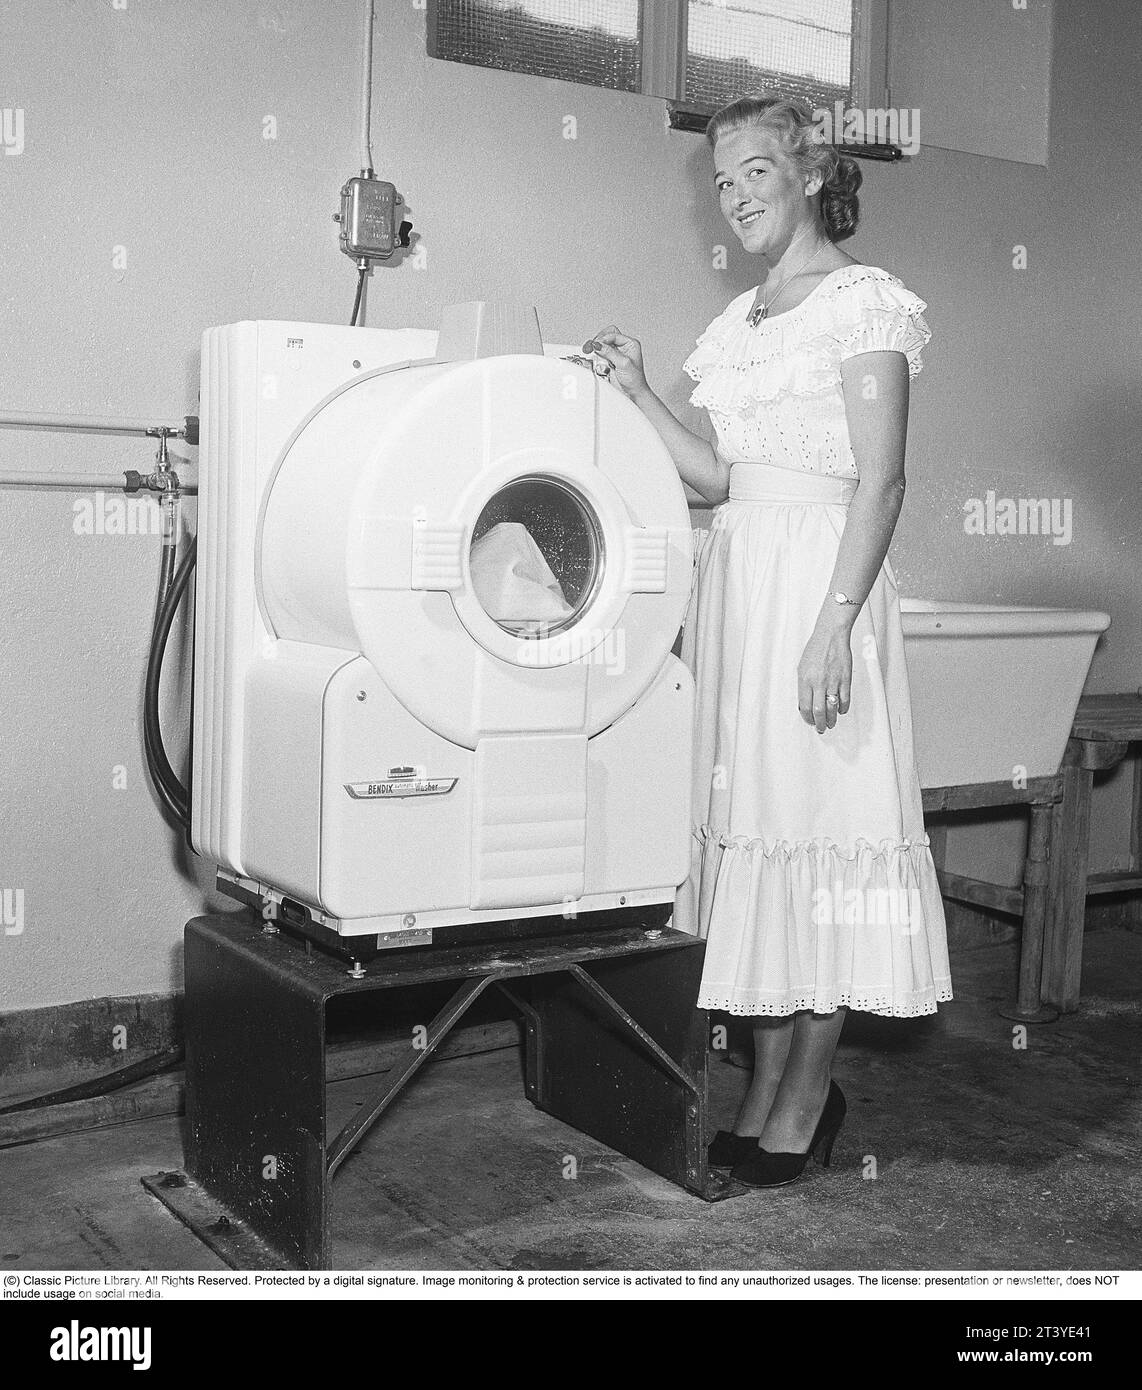 In den 1950er Jahren Eine junge Frau an einer modernen amerikanischen Waschmaschine des Herstellers Bendix. Das Modell war die erste automatische Waschmaschine und ähnelte nicht den heutigen Waschmaschinen. Schweden 1950. Kristoffersson Ref. AZ78-8 Stockfoto